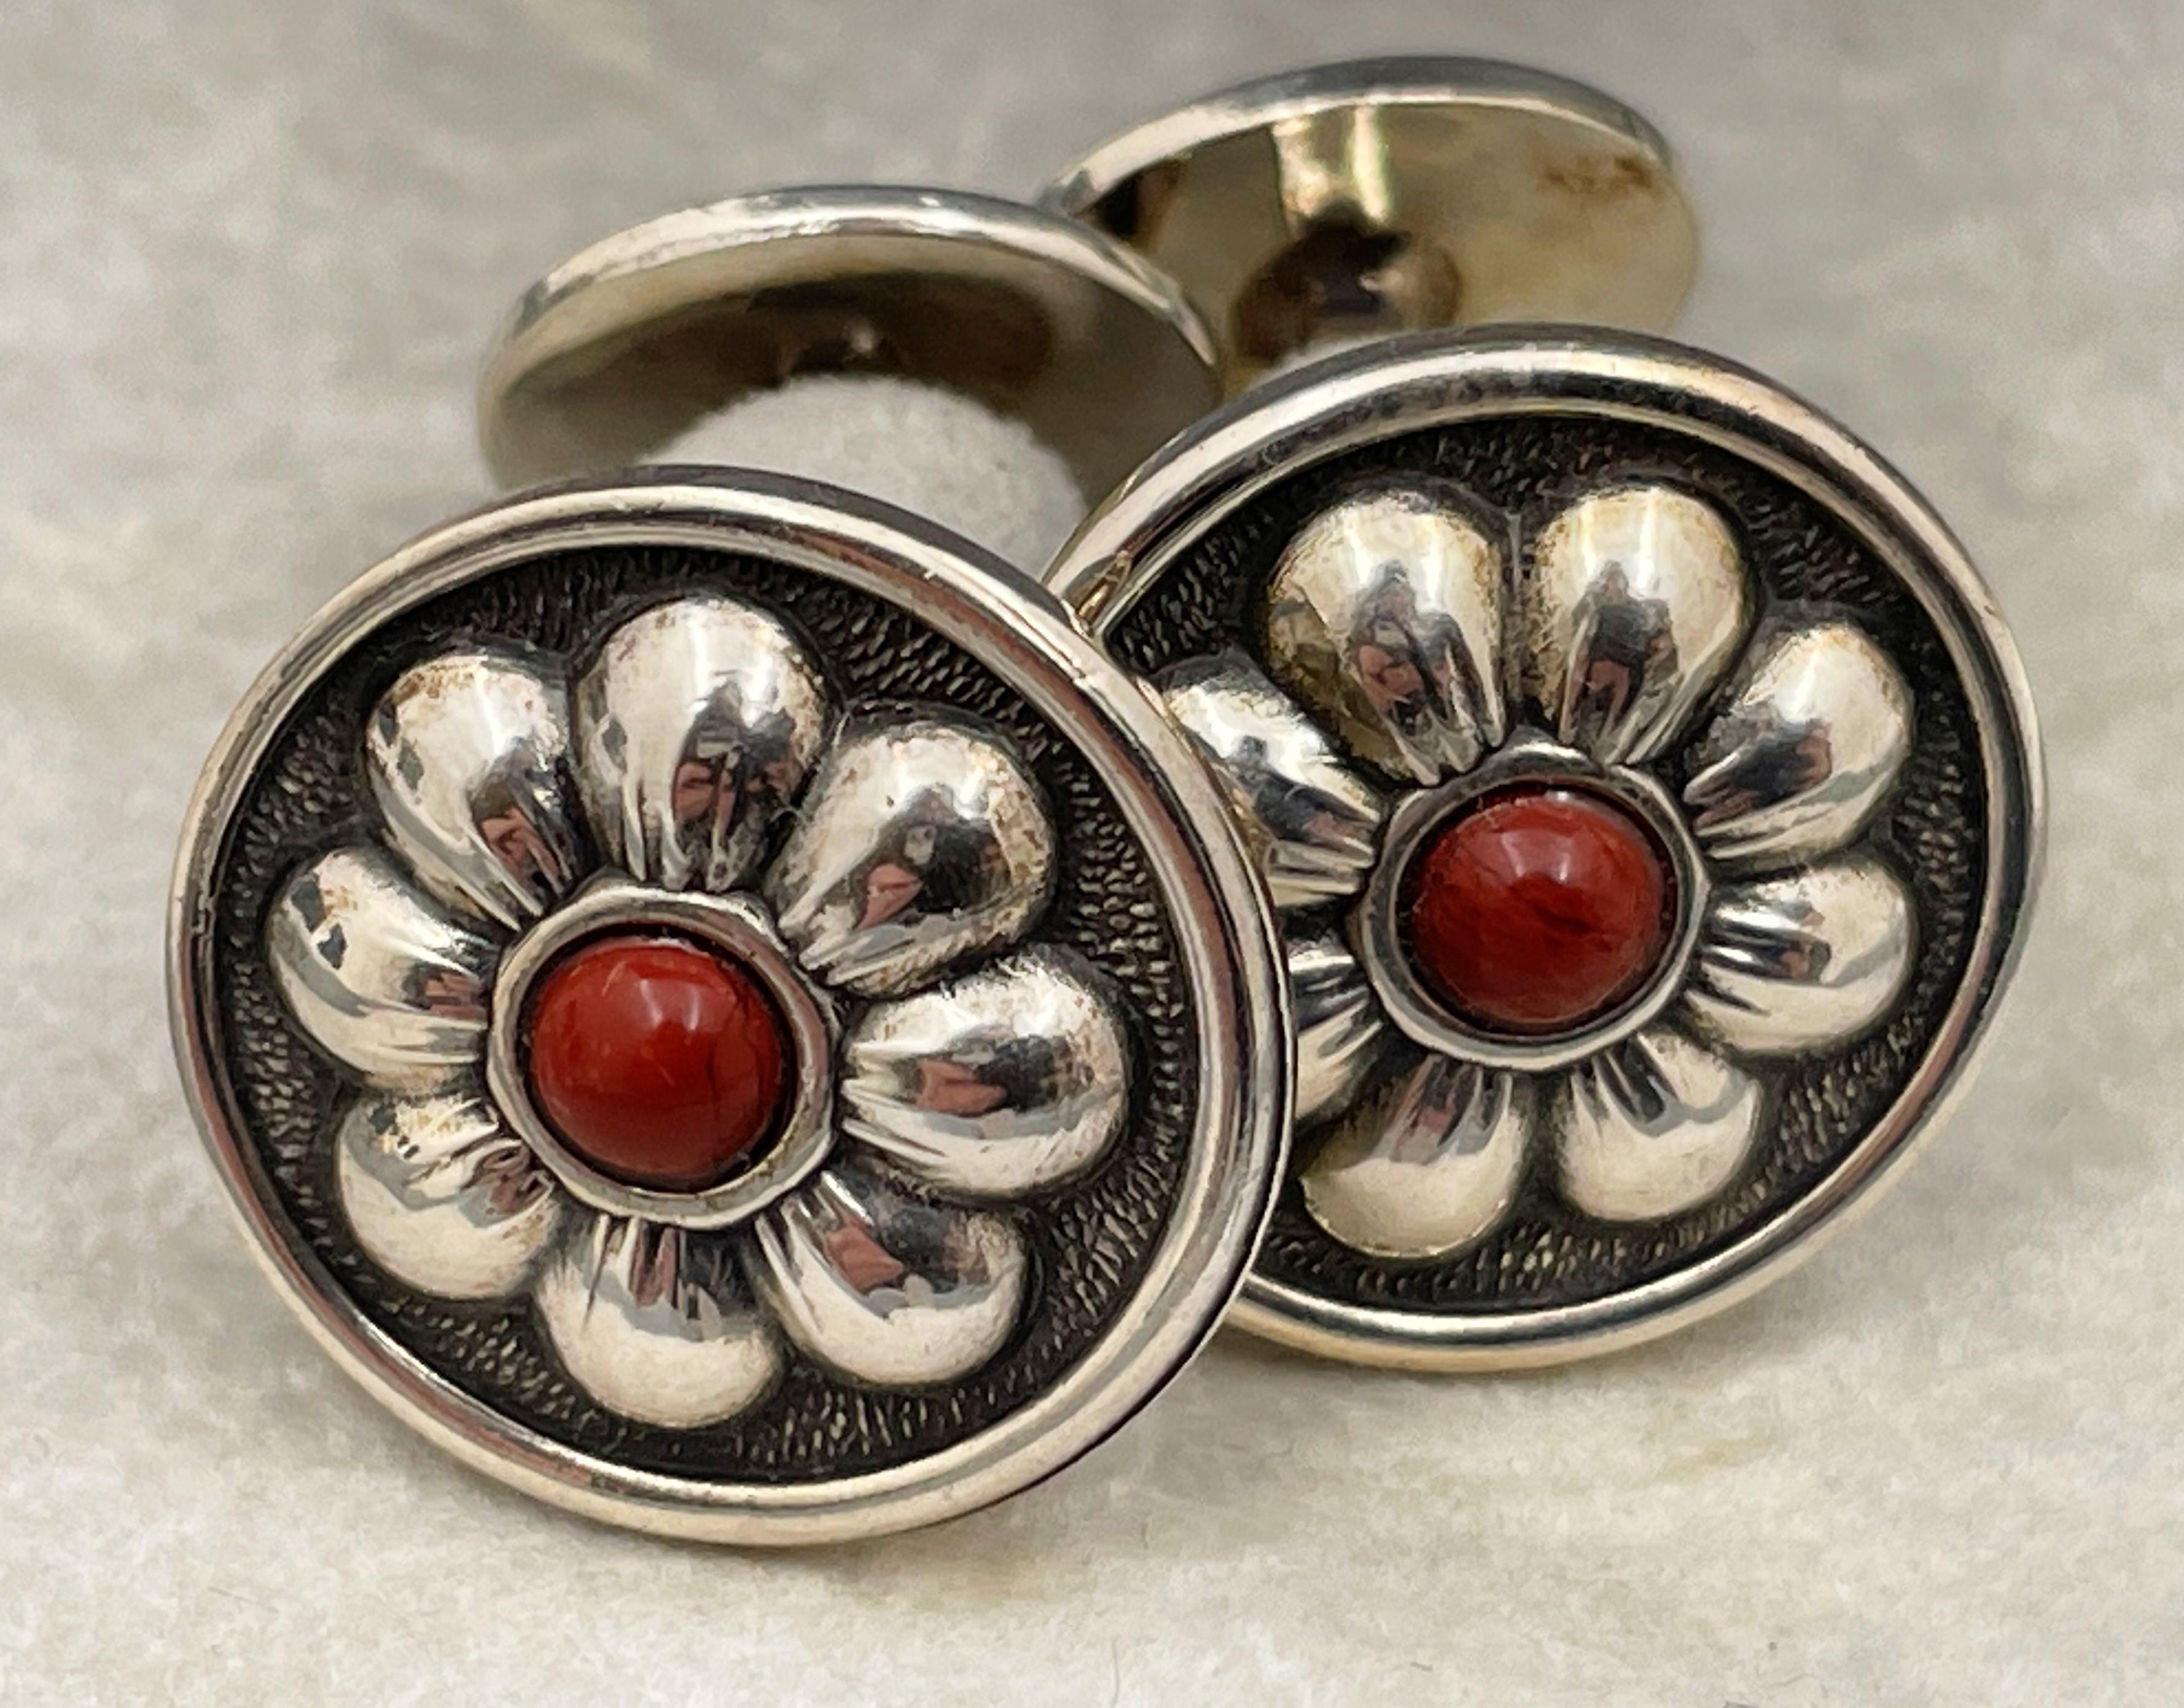 Gianmaria Buccellati, Italie, paire de boutons de manchette en argent sterling avec jaspe rouge au centre, dans un beau motif floral, mesurant 2/3'' de diamètre, et portant des poinçons. Vendu dans sa boîte d'origine, jamais utilisé. 

Mario